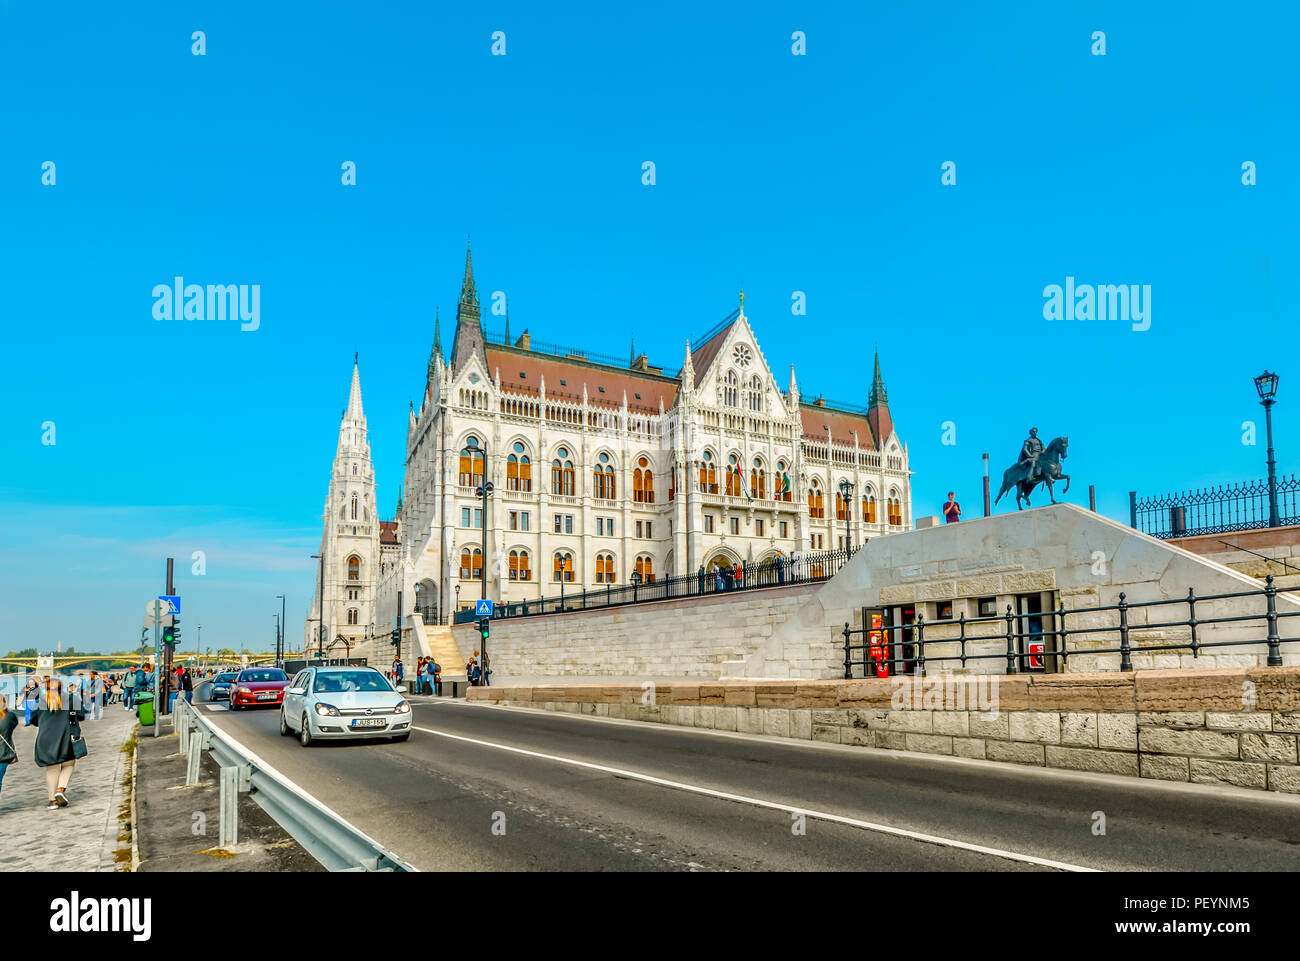 Turisti e le automobili viaggiano waterfront avenue lungo il fiume Danubio con il Parlamento ungherese edificio in vista a Budapest, Ungheria Foto Stock